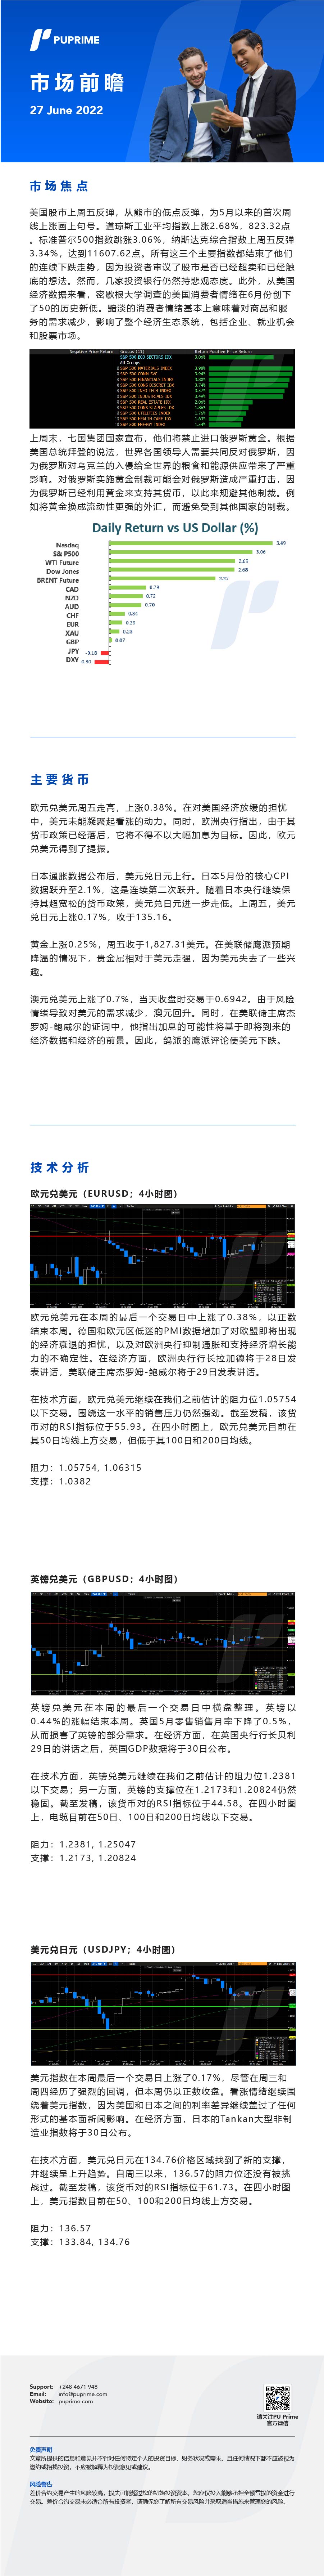 27062022 Daily Market Analysis__CHN.jpg